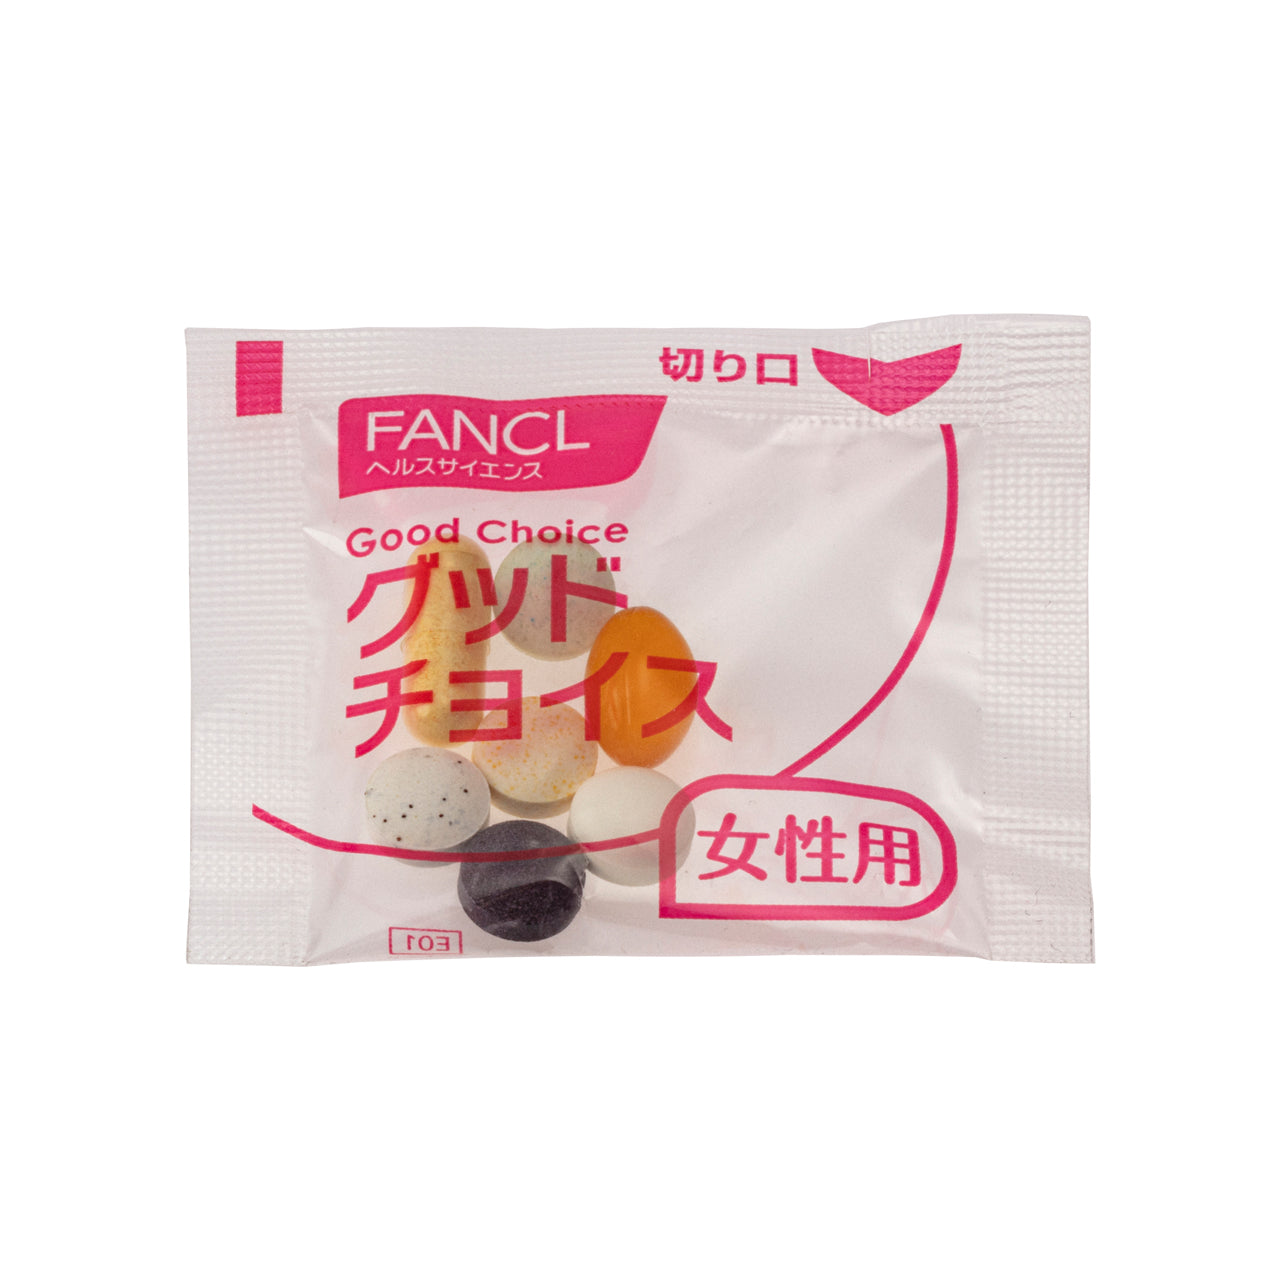 FANCL 30'S Women Supplement 30 Packs